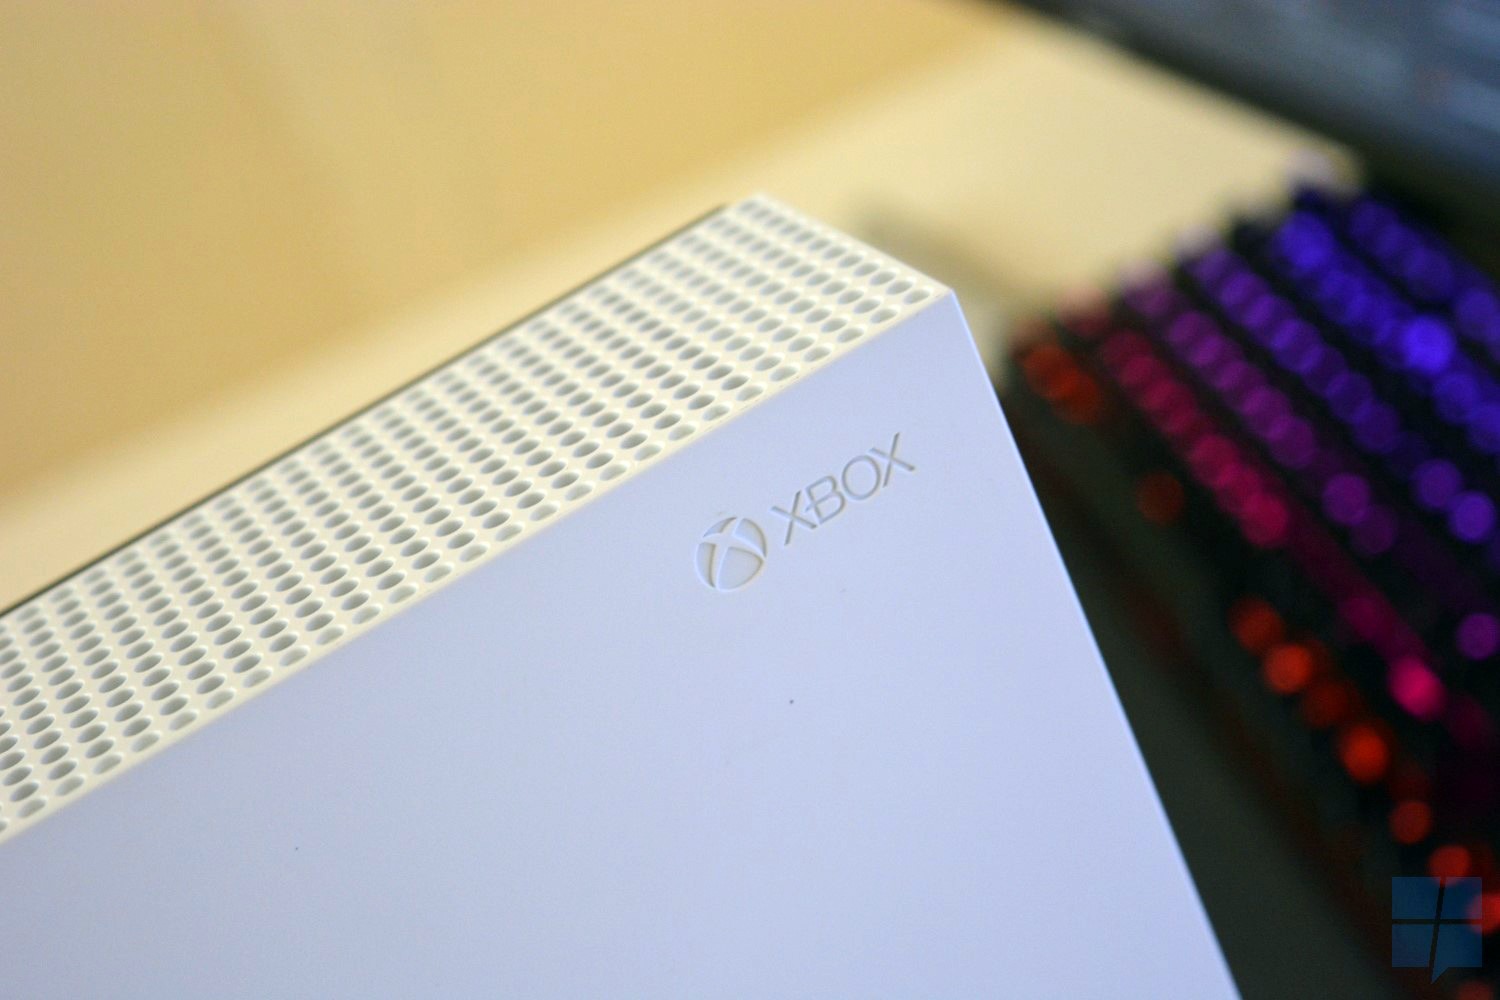 Alguém transformou o Xbox One S em um notebook portátil para jogar